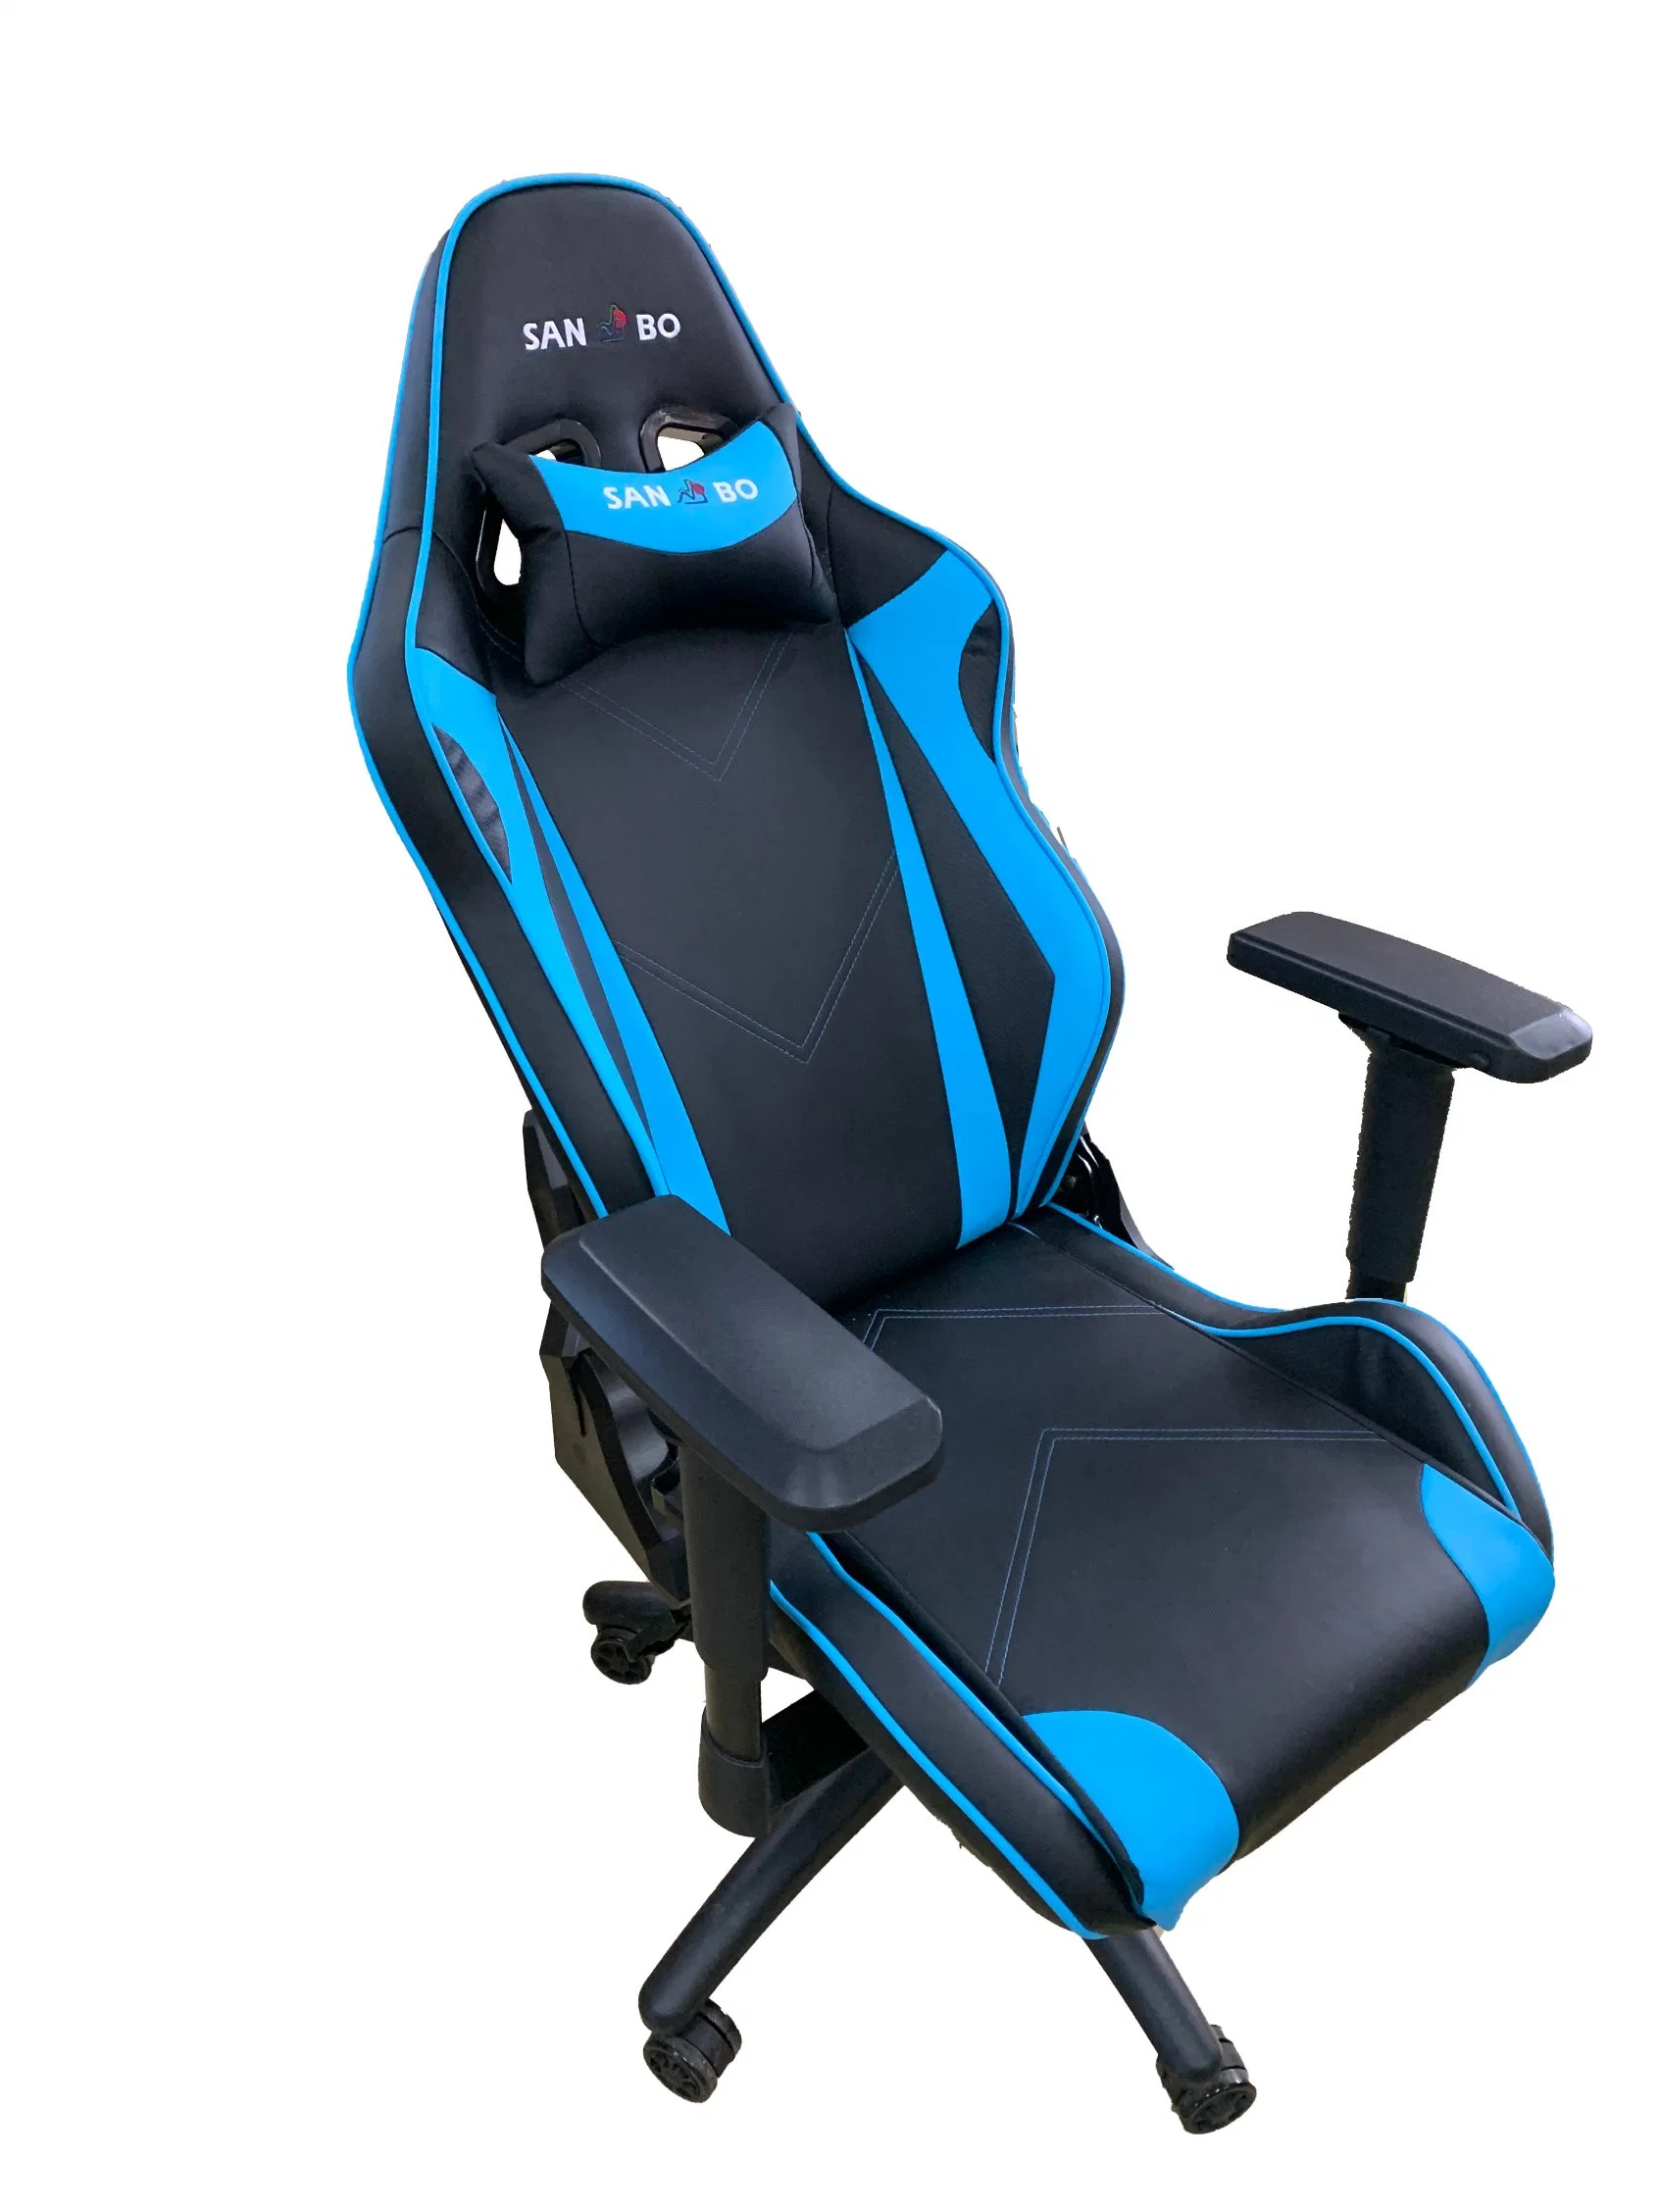 Novo preço baixo Cadeira de jogos ajustável de 360 graus com rotação para jogar jogos de computador, escritório.